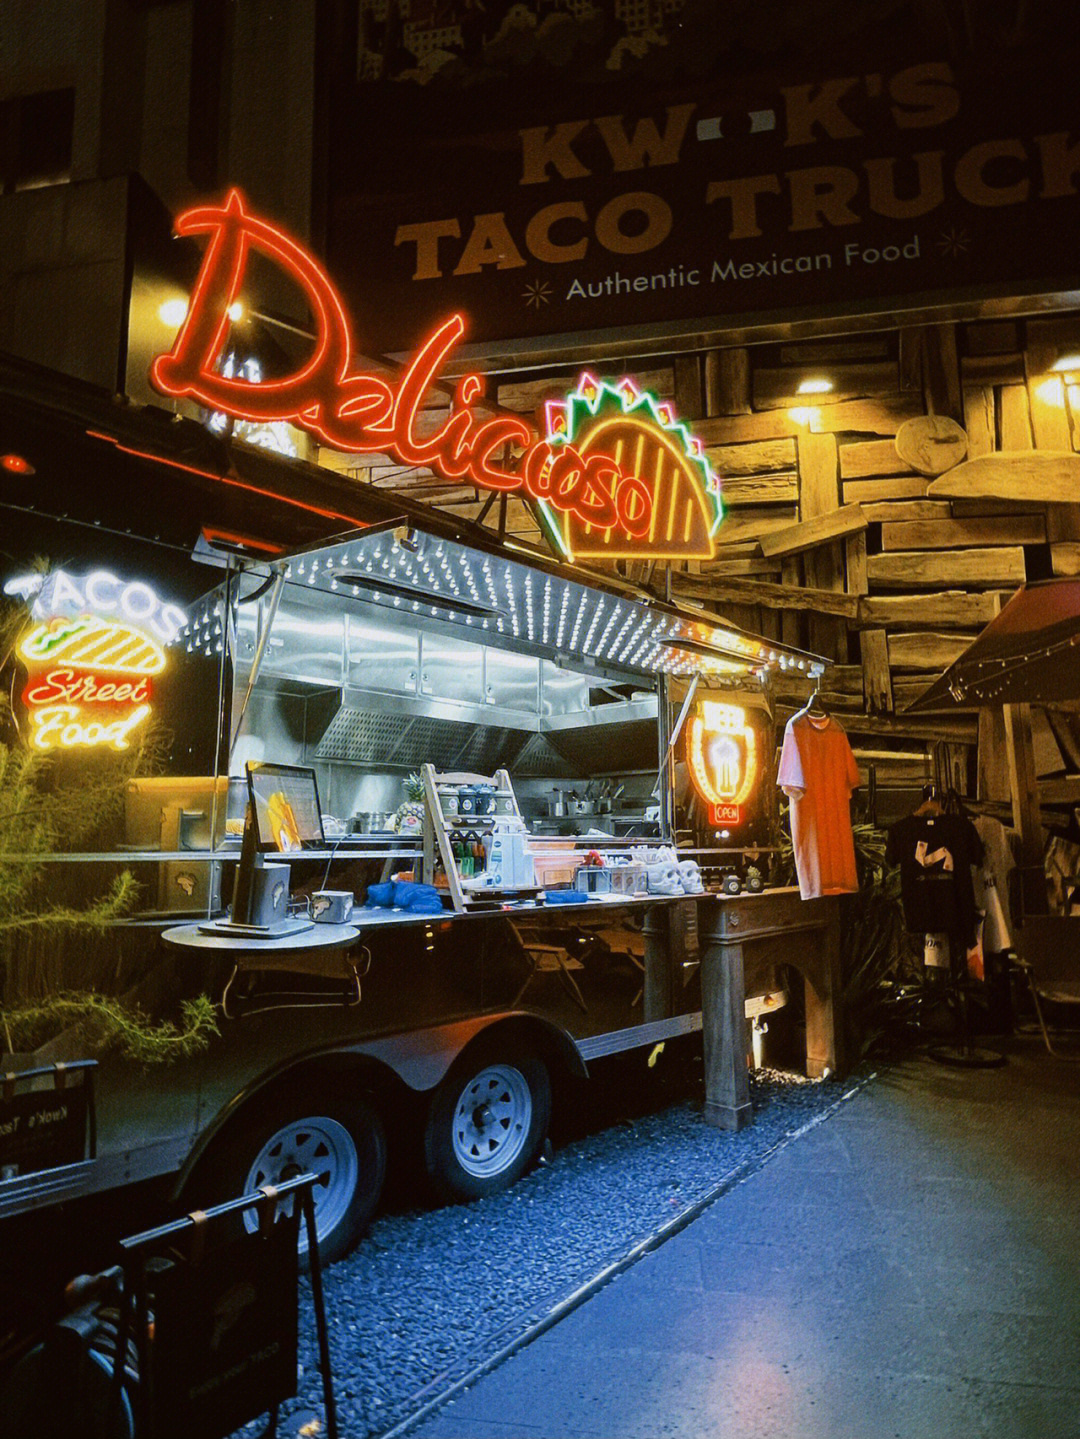 可以说是广州最出片的taco餐车霓虹灯户外餐车,搭配热带植物拍摄氛围